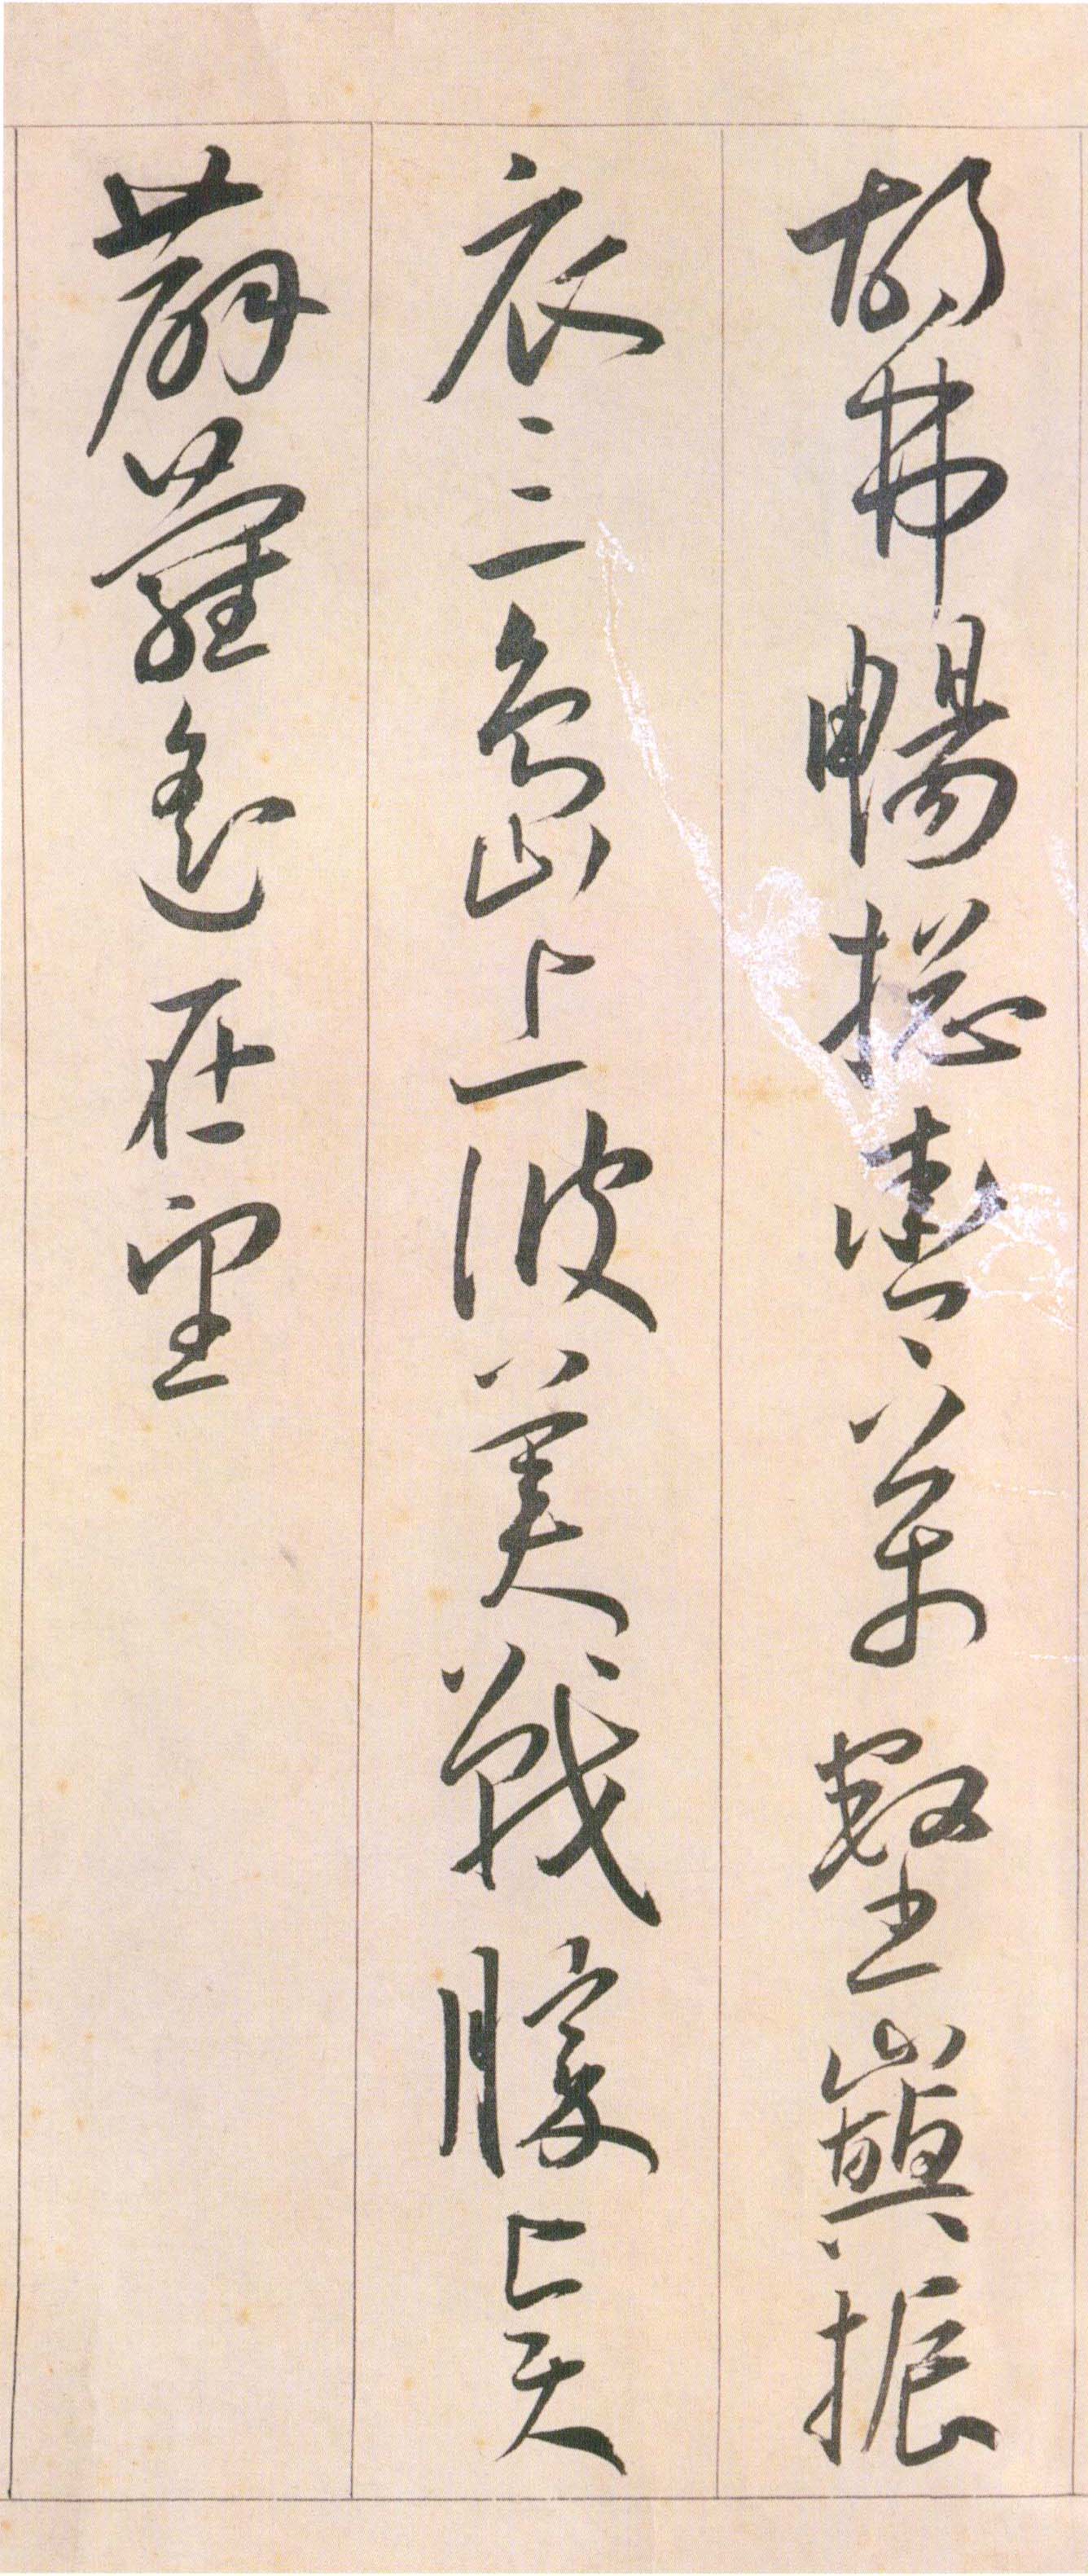 王宠《自书游包山诗》卷-天津艺术博物院藏(图12)